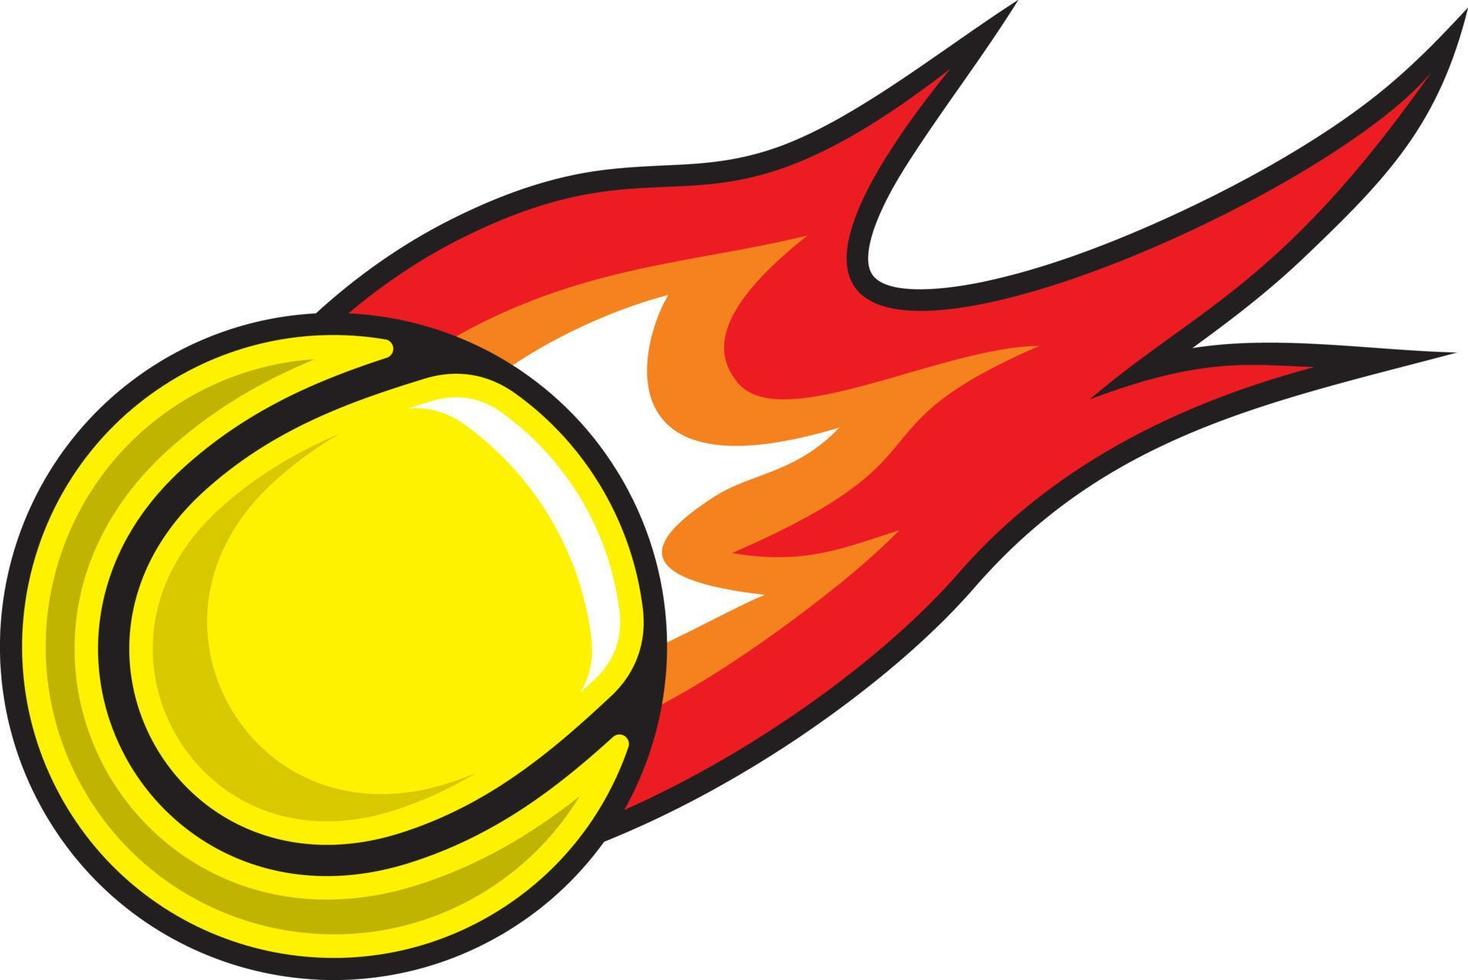 Tennis ball on fire vector